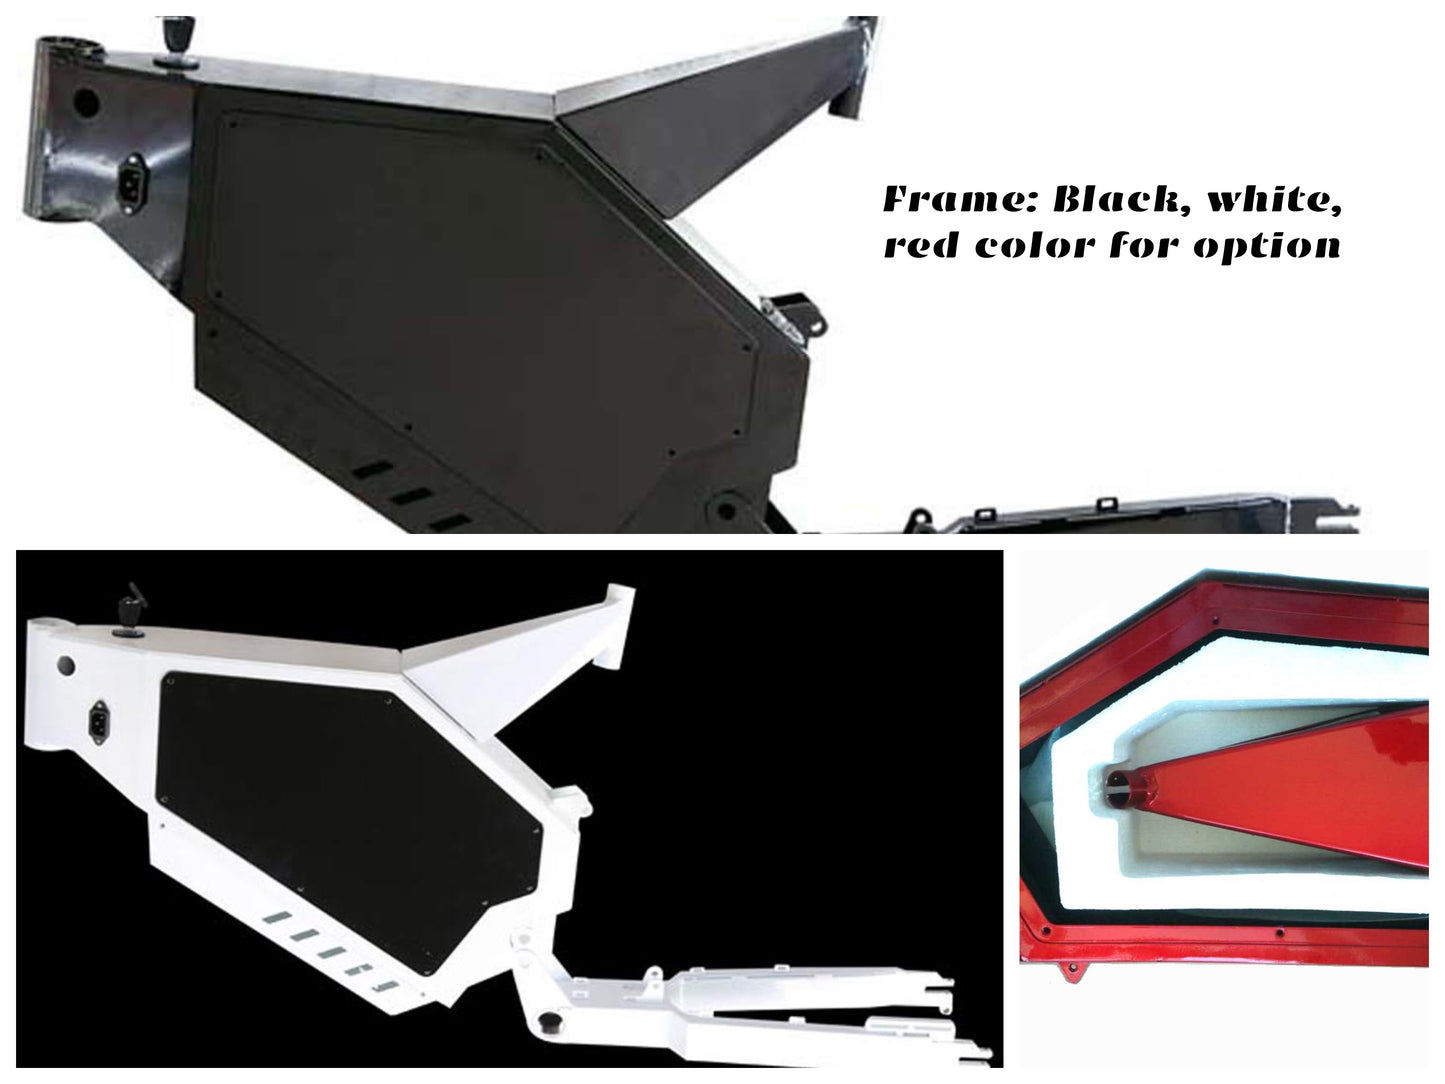 stealth bomber frame black, white and red